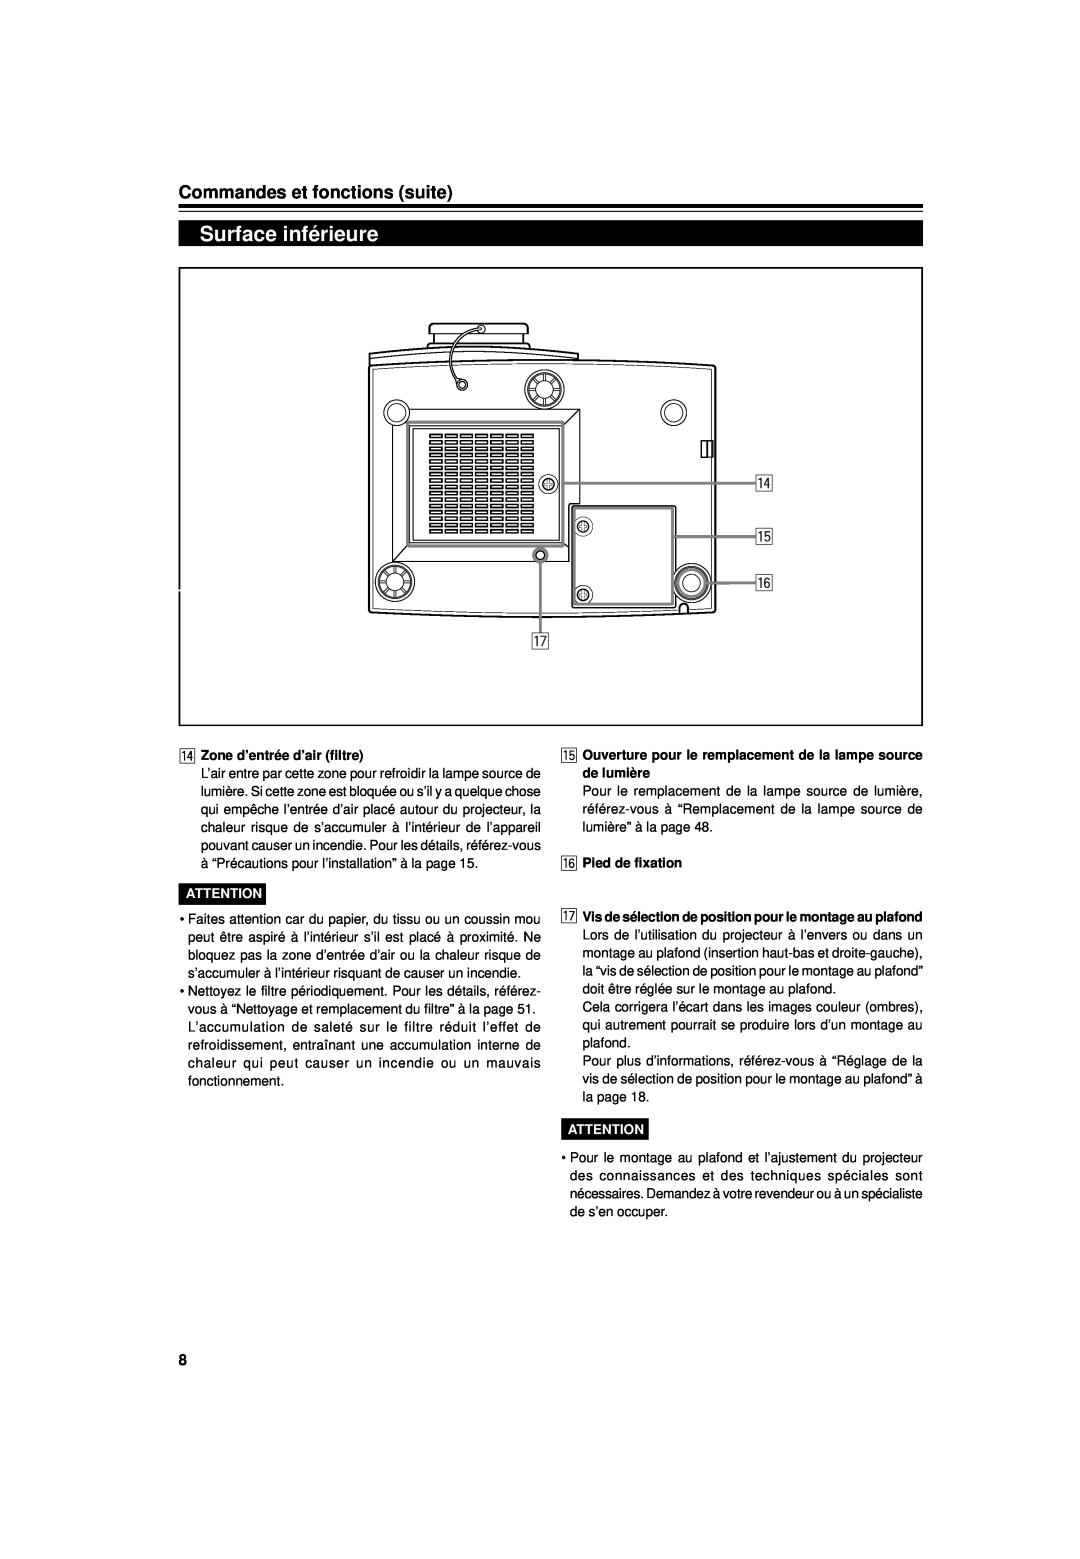 JVC DLA-G15U Surface inférieure, Commandes et fonctions suite, r t y u, r Zone d’entrée d’air filtre, y Pied de fixation 